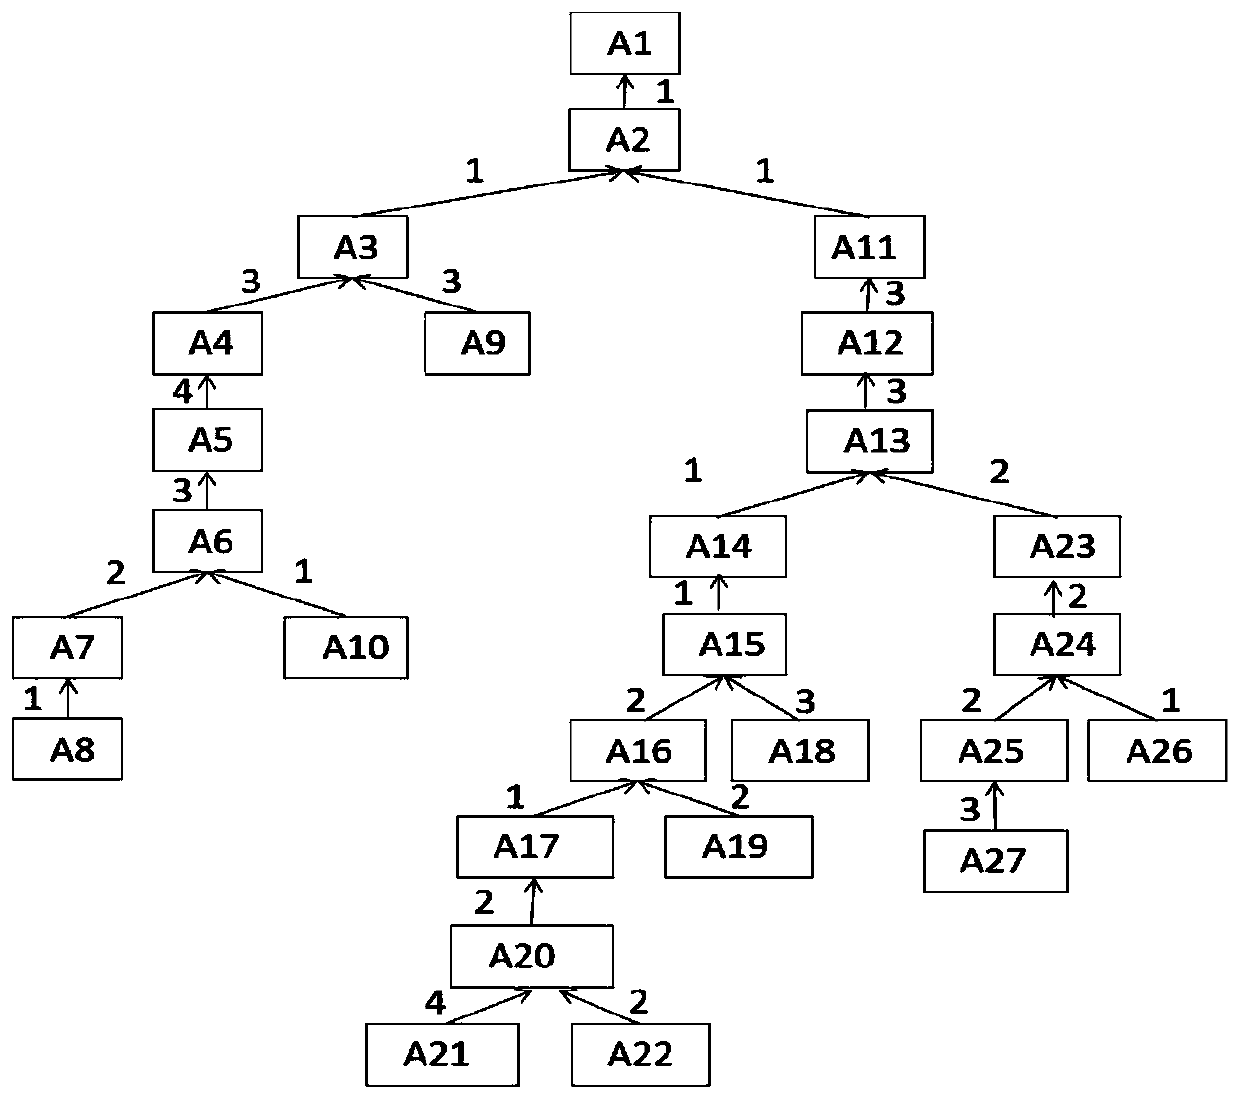 Comprehensive scheduling method based on Dijkstra algorithm